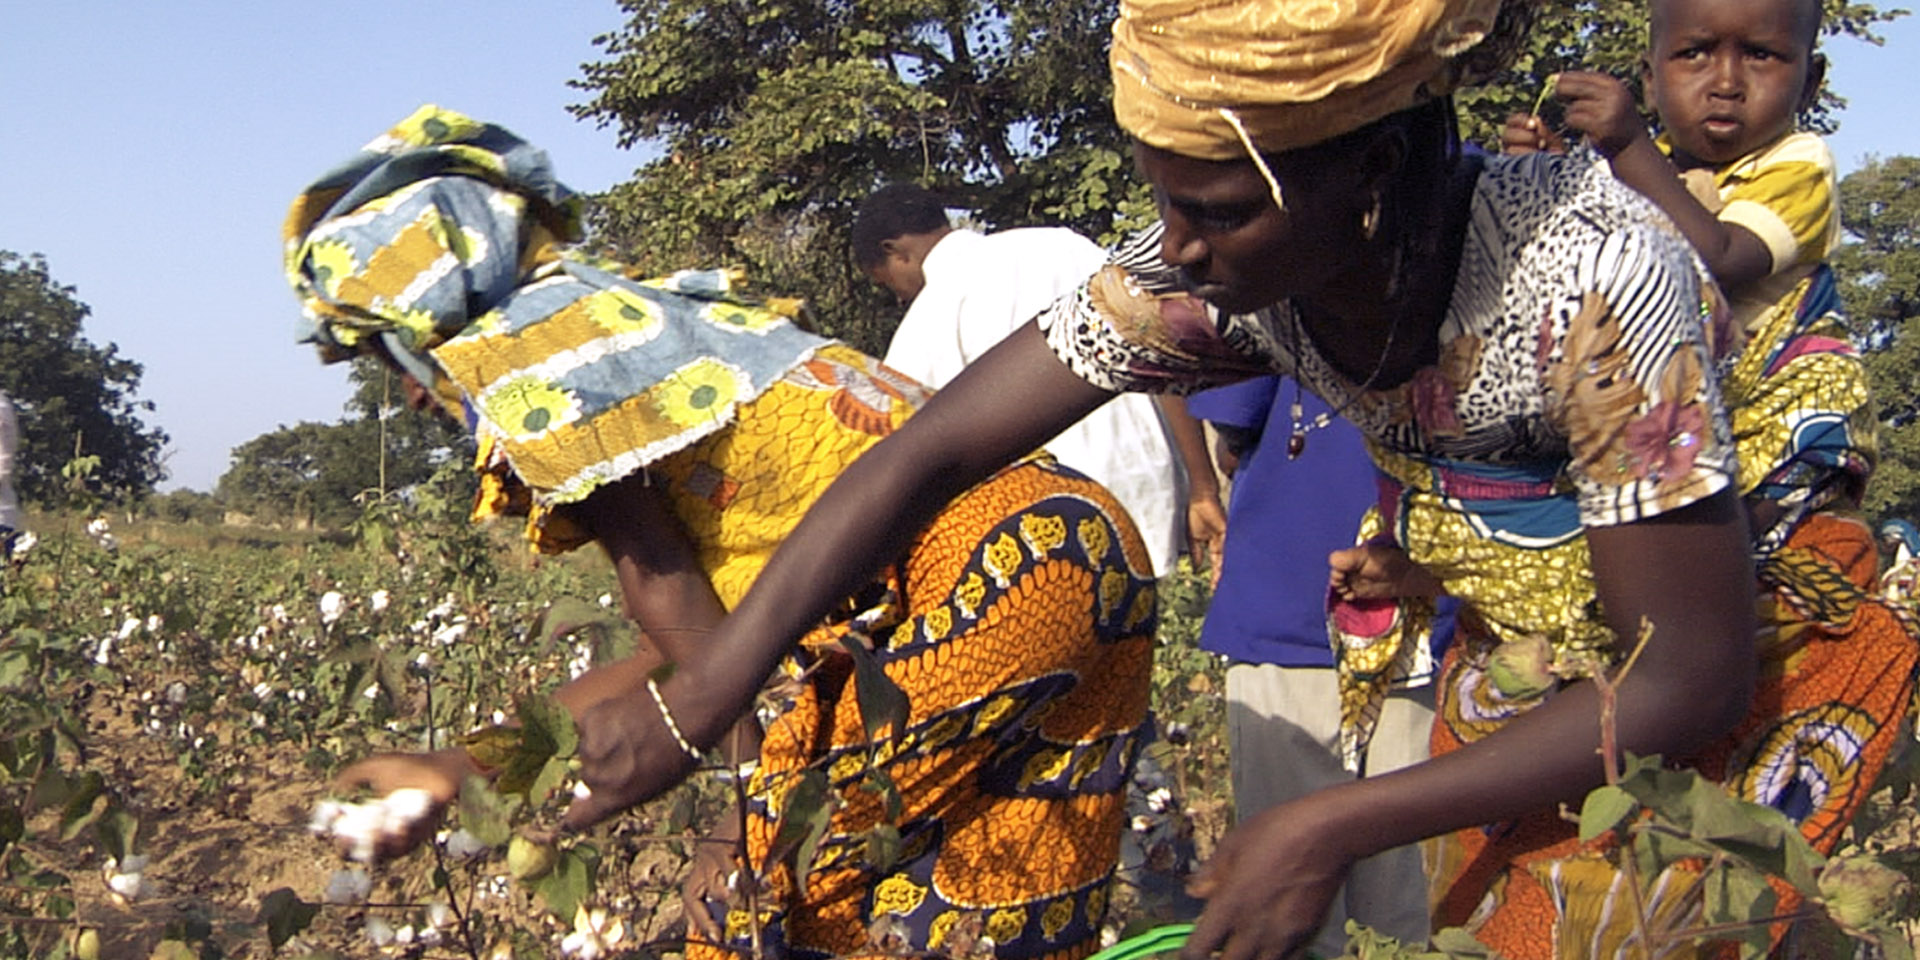 hessnatur | "Bio-Baumwolle in Burkina Faso" | Image Documentary